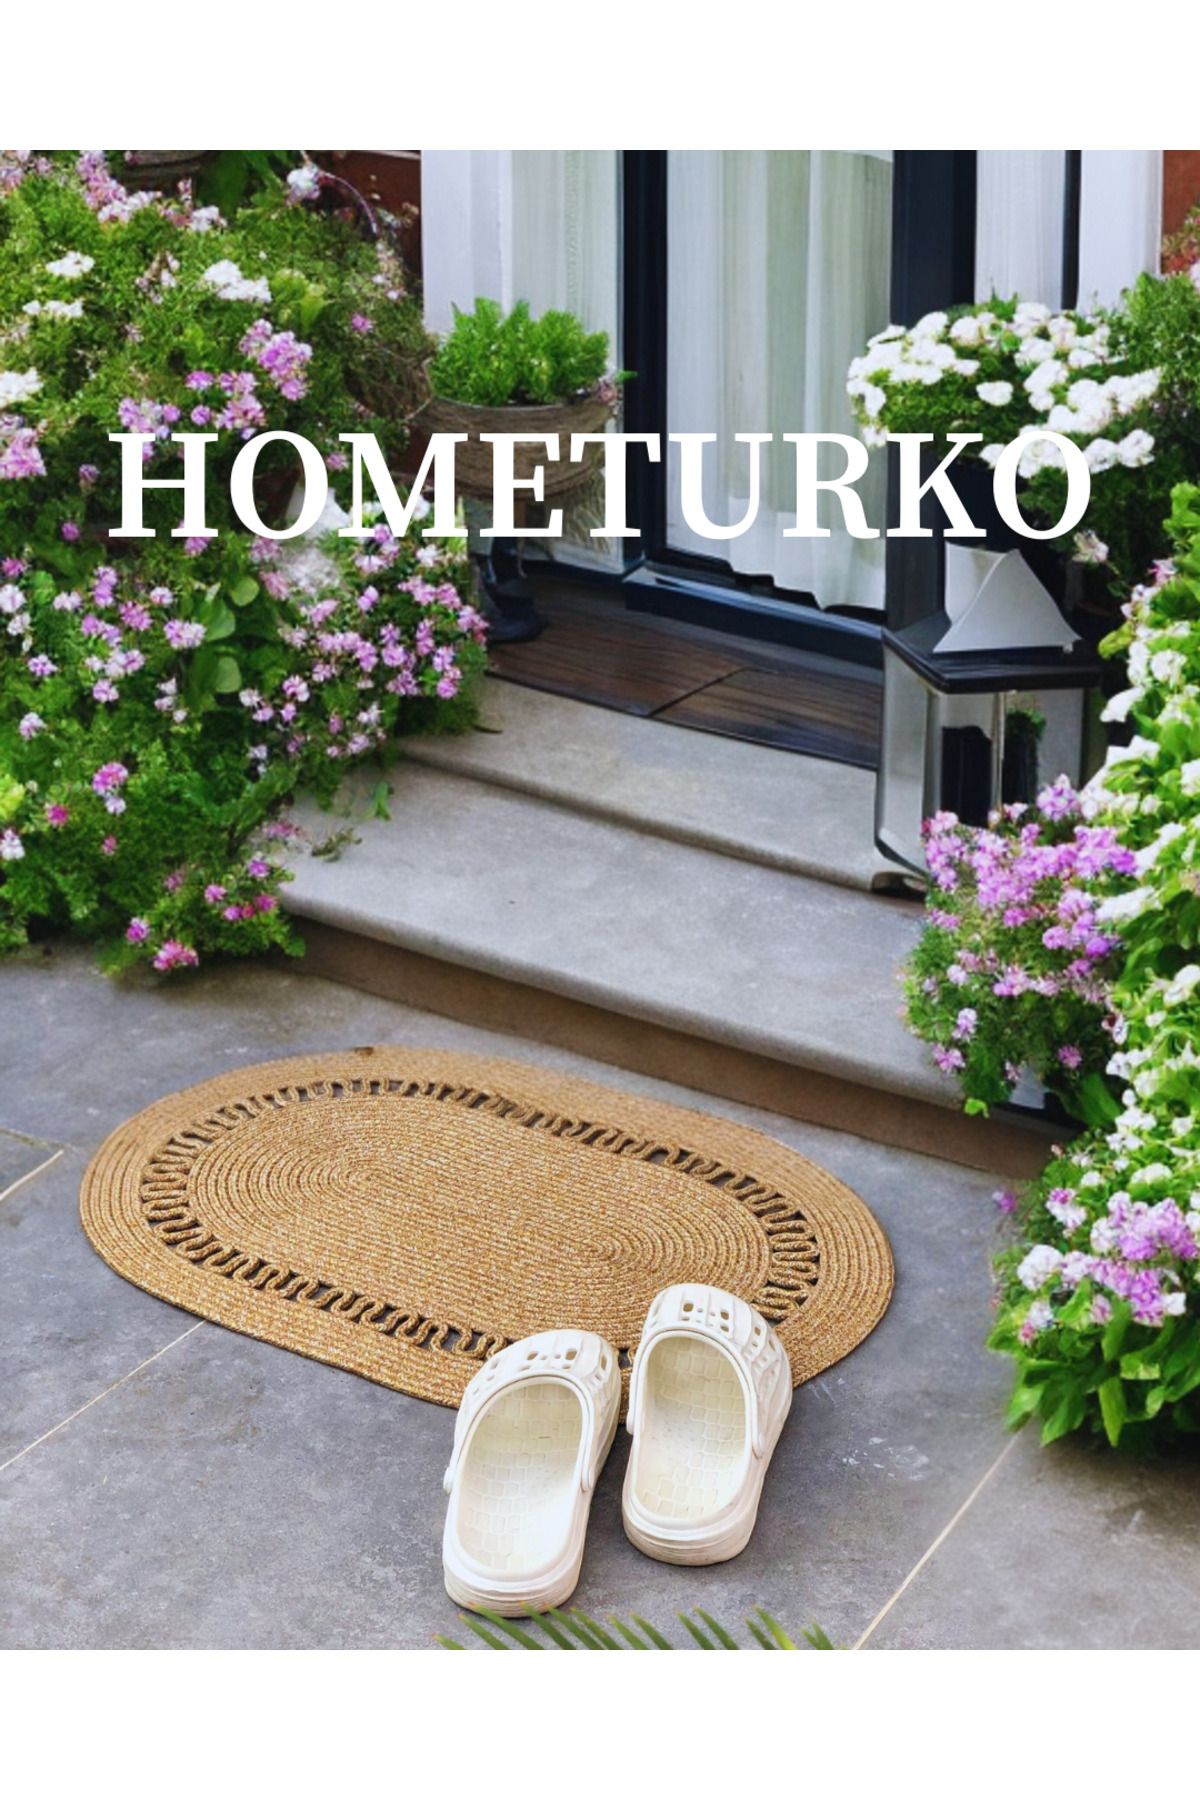 HomeTurko Jüt, Desenli Kapı Önü, Paspas, Banyo Paspası, Balkon Paspası / Hediyelik, Ev Eşyası.